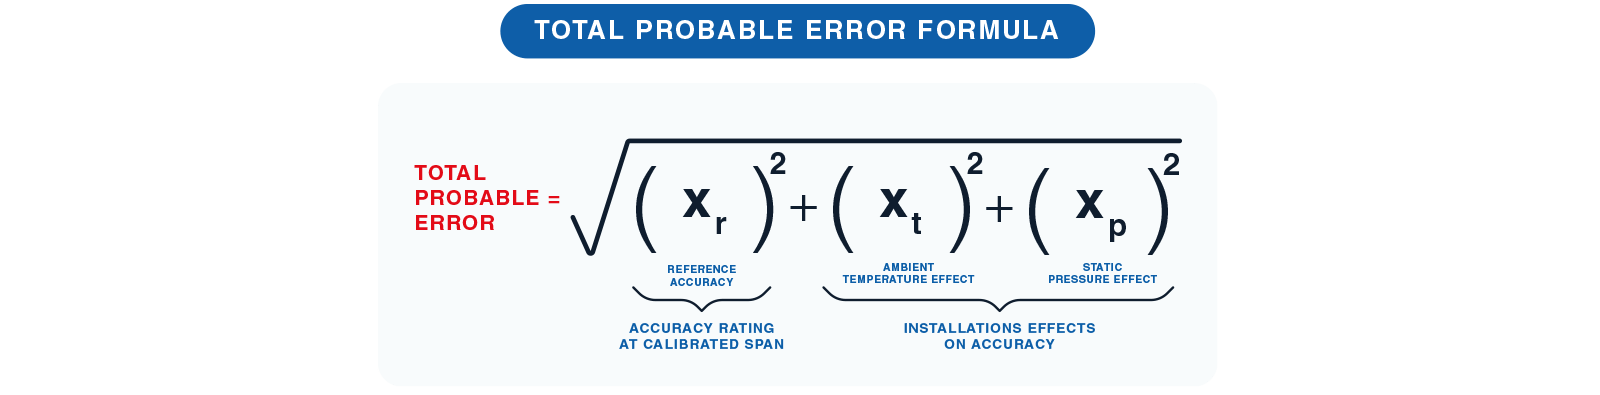 формула для расчета вероятной суммарной ошибки en